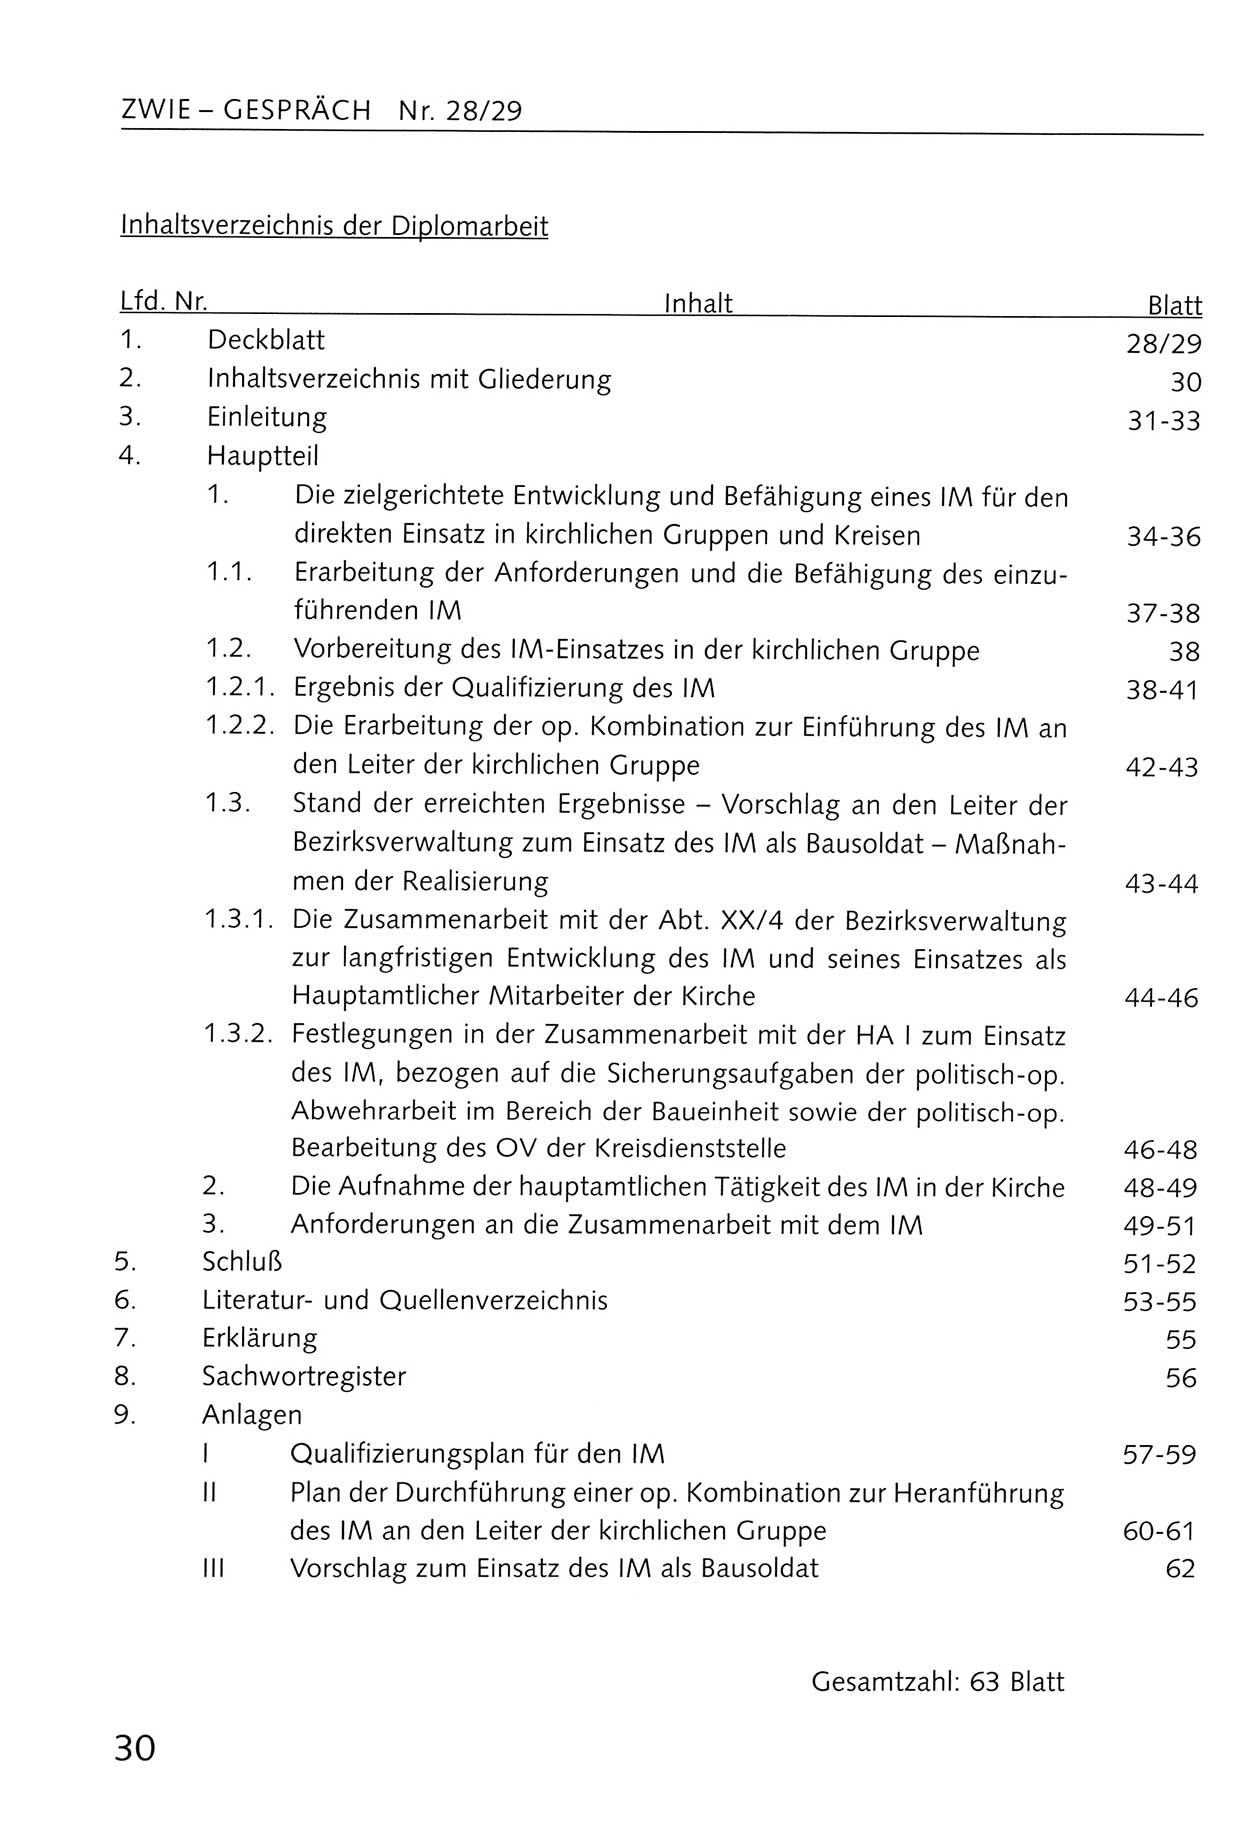 Zwie-Gespräch, Beiträge zum Umgang mit der Staatssicherheits-Vergangenheit [Deutsche Demokratische Republik (DDR)], Ausgabe Nr. 28/29, Berlin 1995, Seite 30 (Zwie-Gespr. Ausg. 28/29 1995, S. 30)